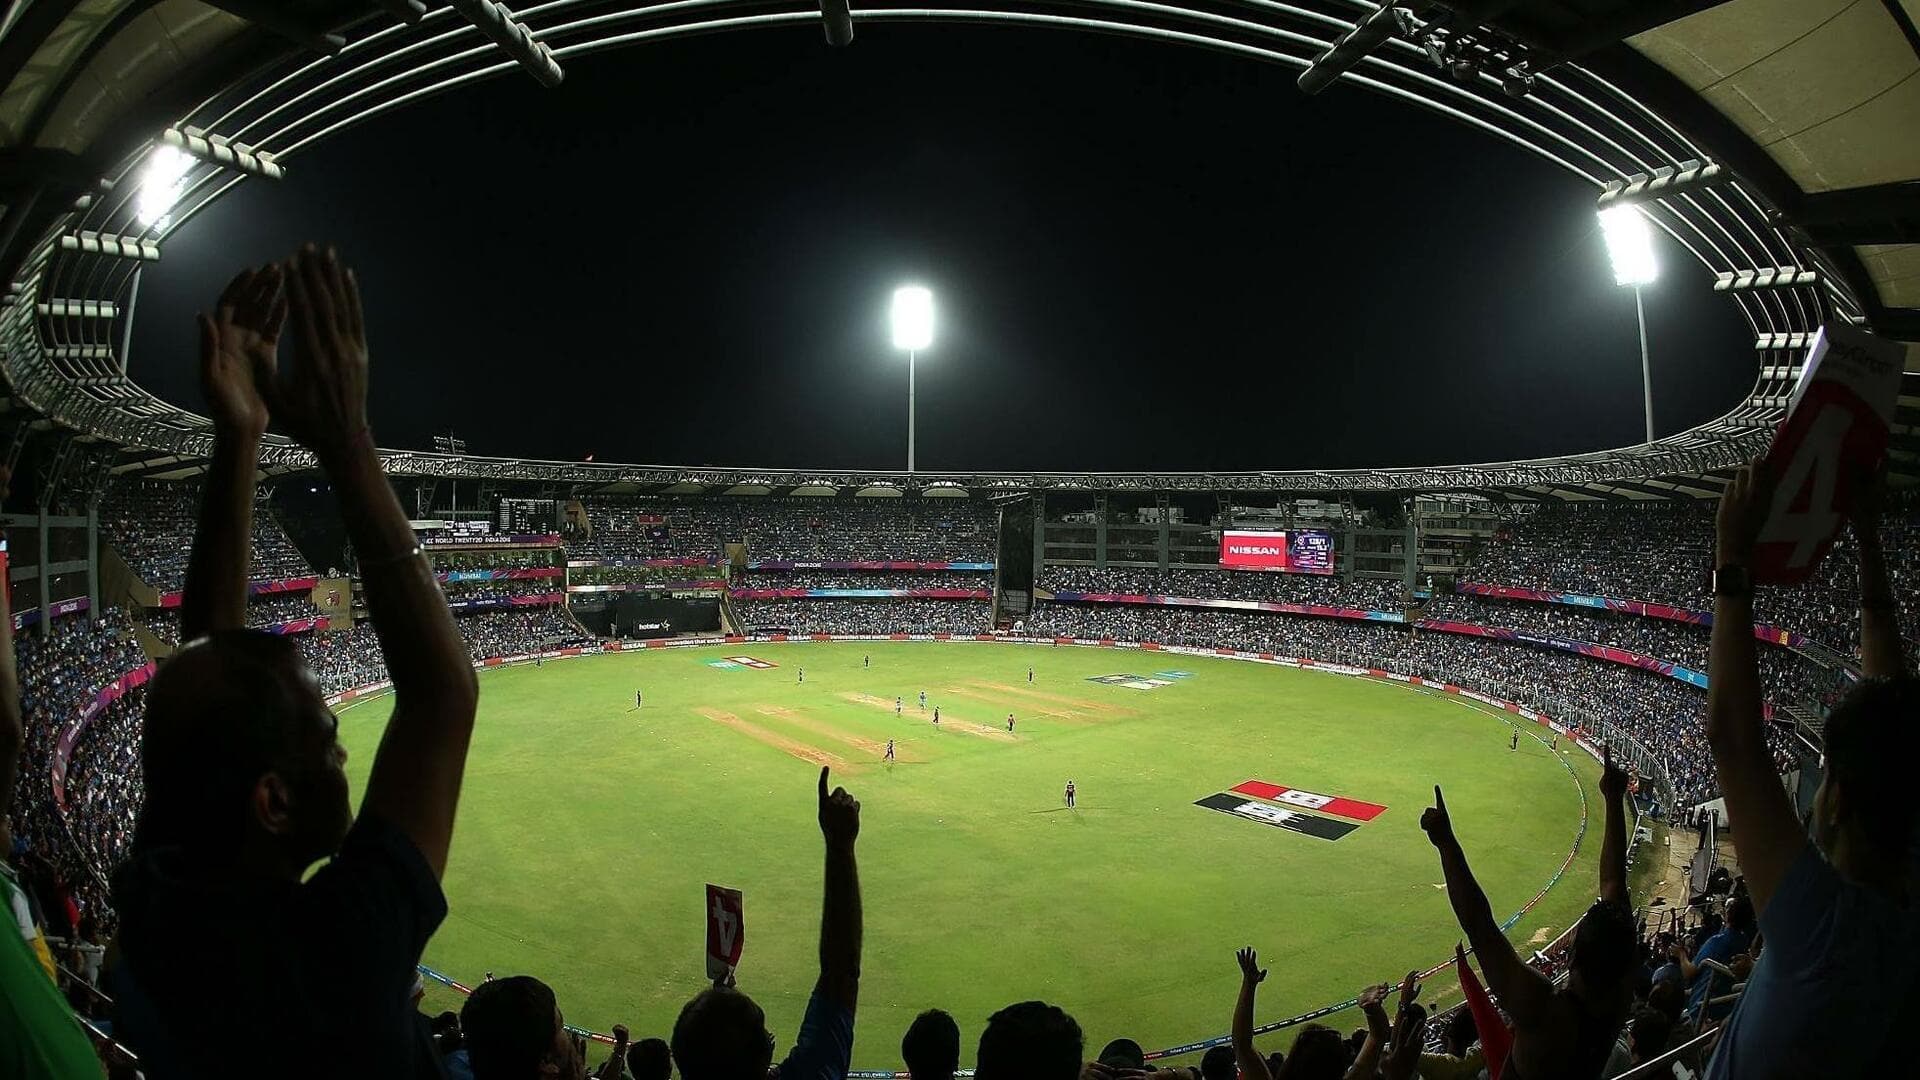 102 IPL मैचों की मेजबानी वाले वानखेड़े स्टेडियम पर बल्लेबाजों को मिलती है मदद, जानिए आंकड़े 